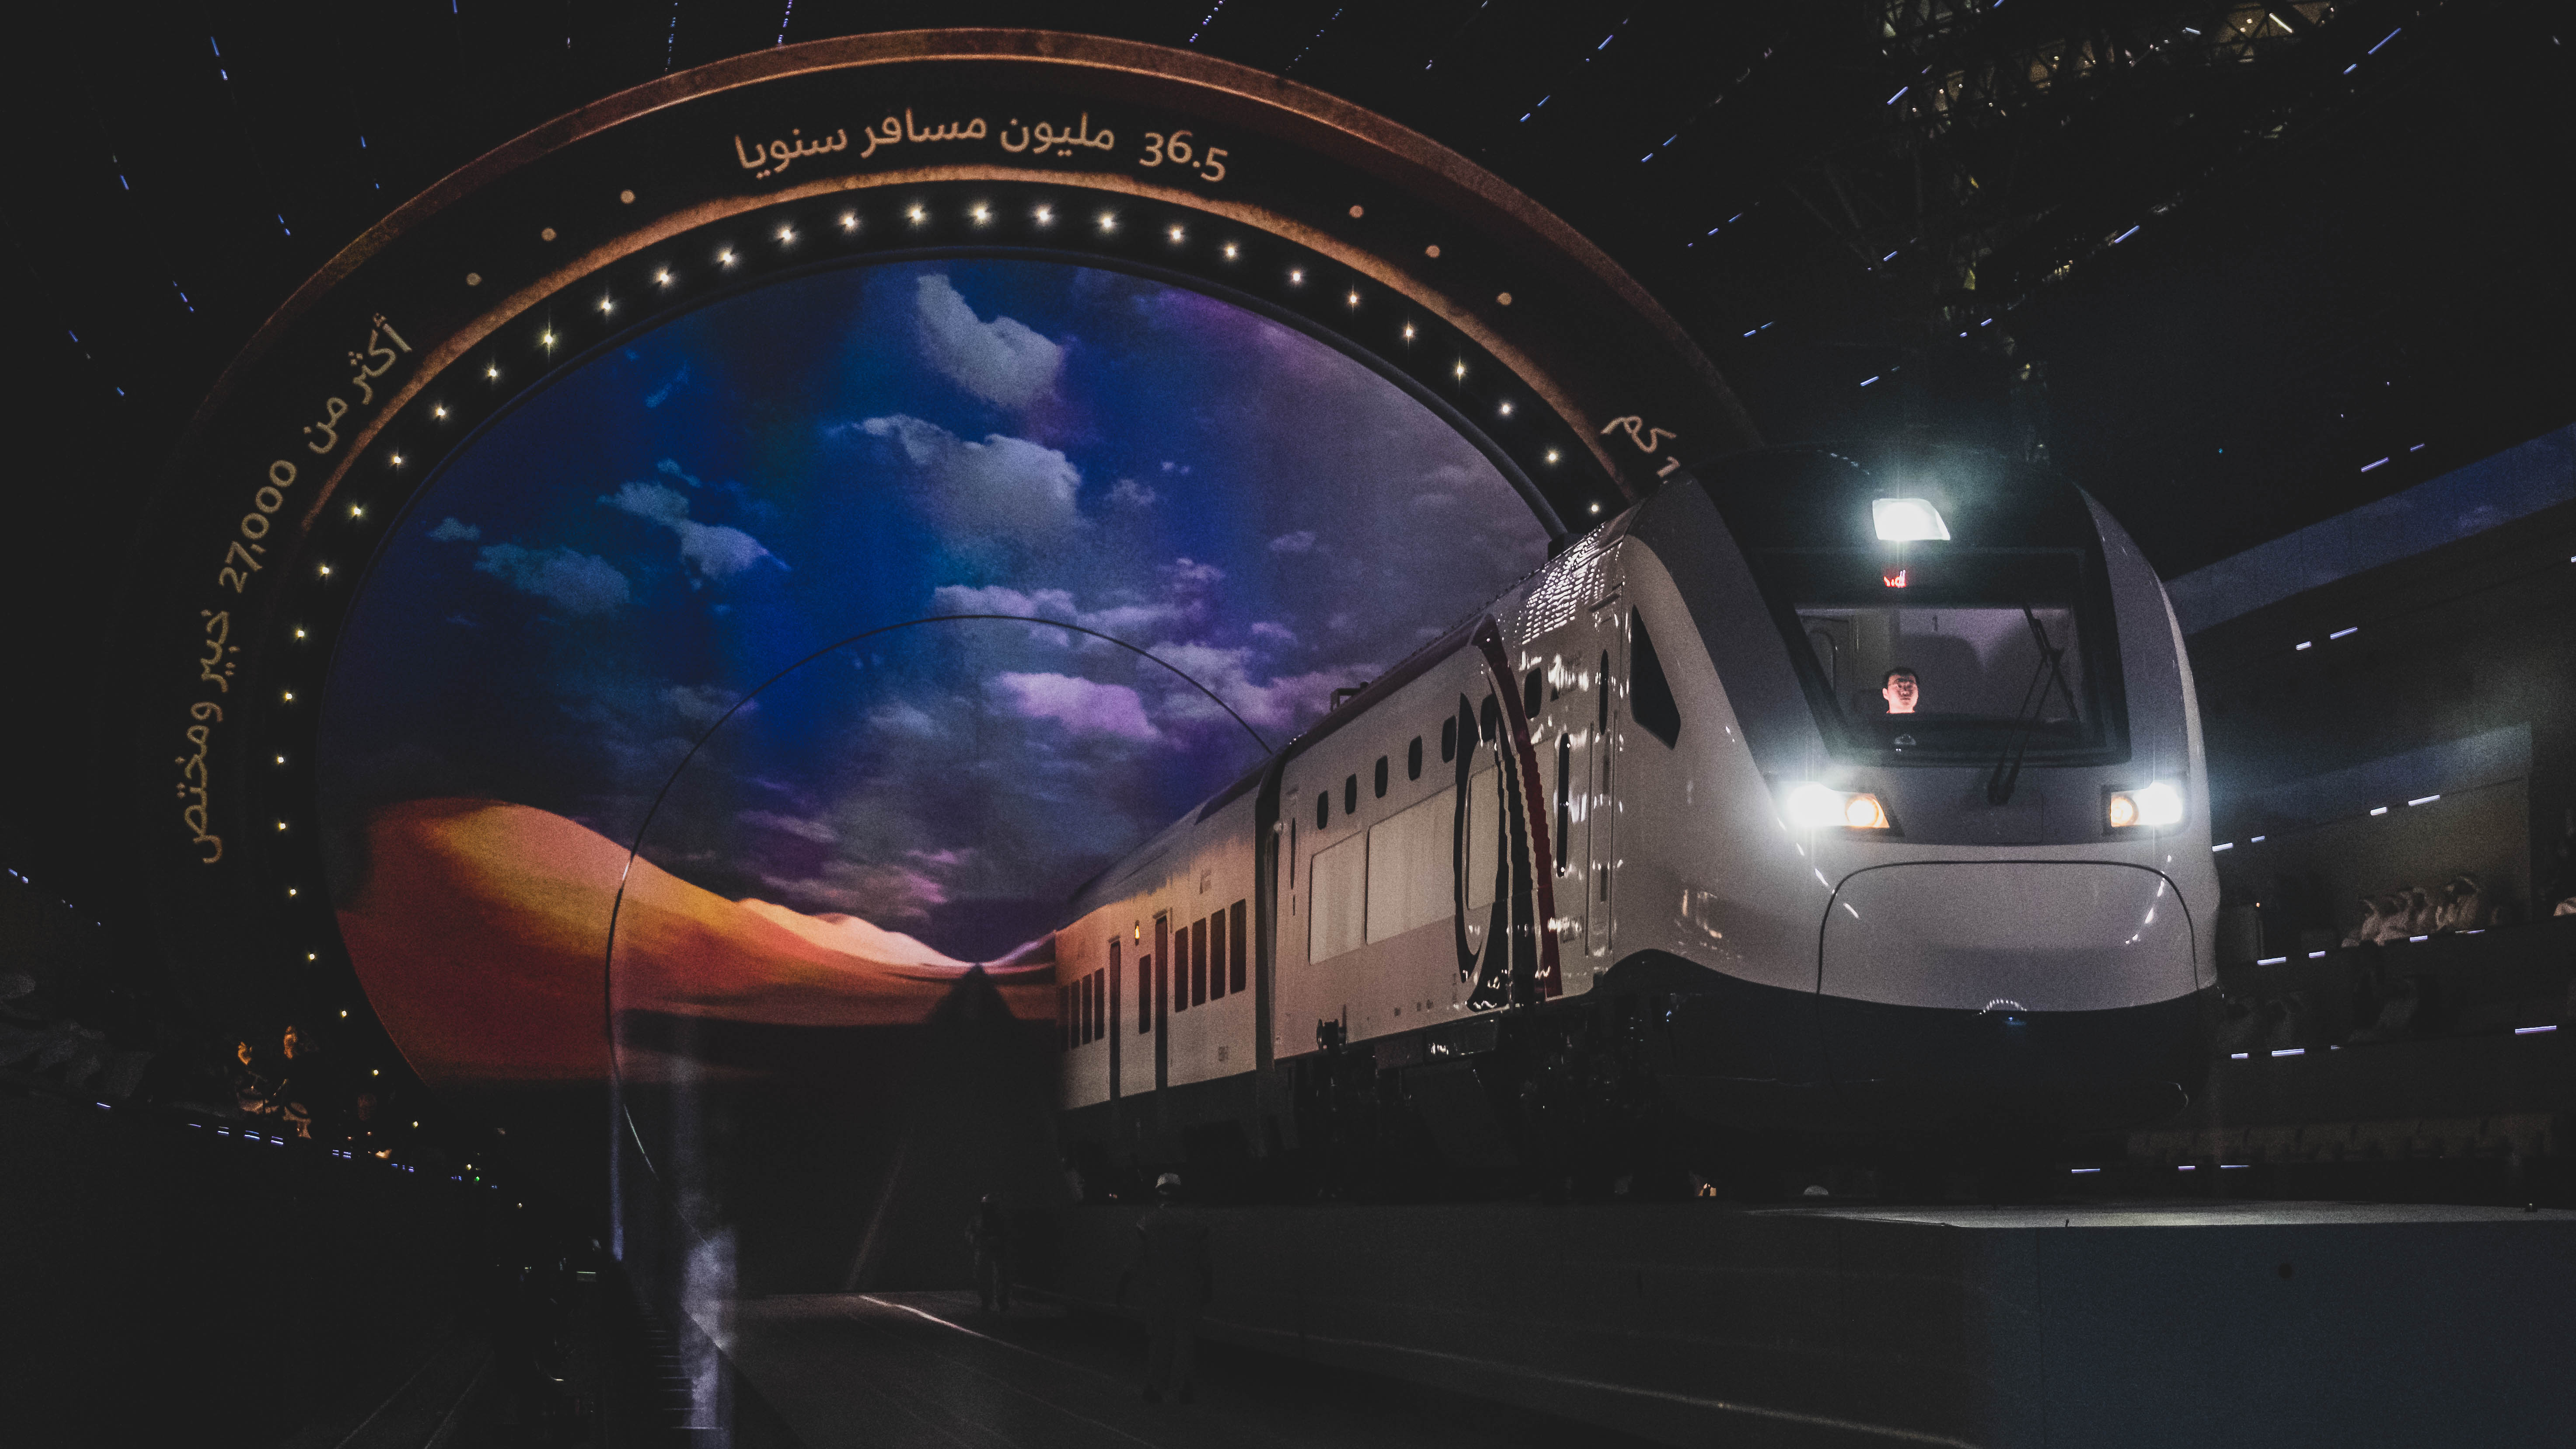 UAE National Day 04 - Train cab